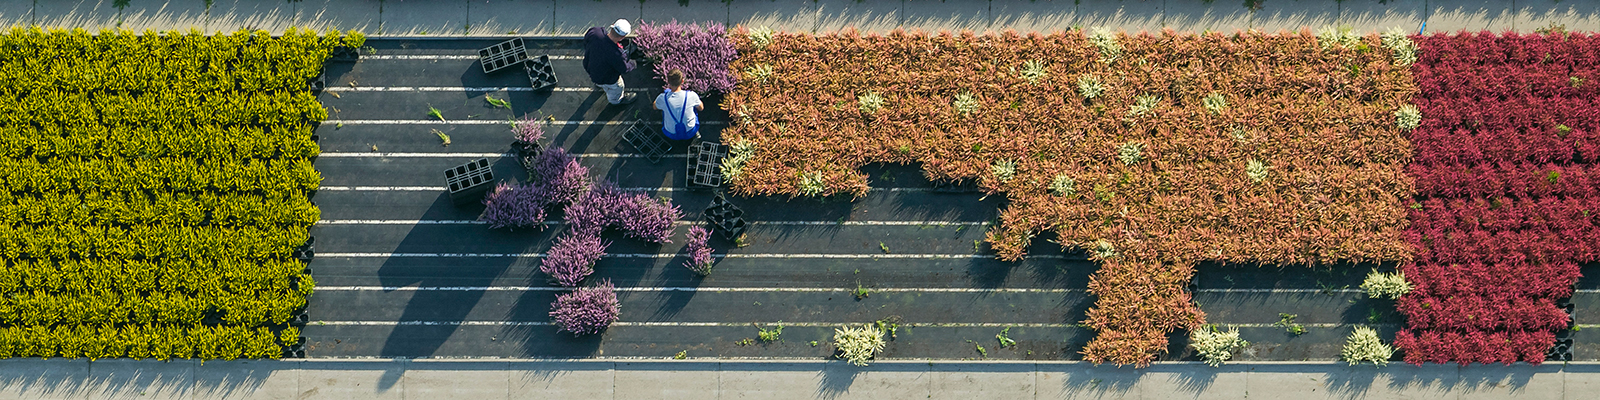 Plantes ornementales symbolisent le thème la politique pour les PME; Source: mauritius images / euroluftbild.de / Hans Blossey